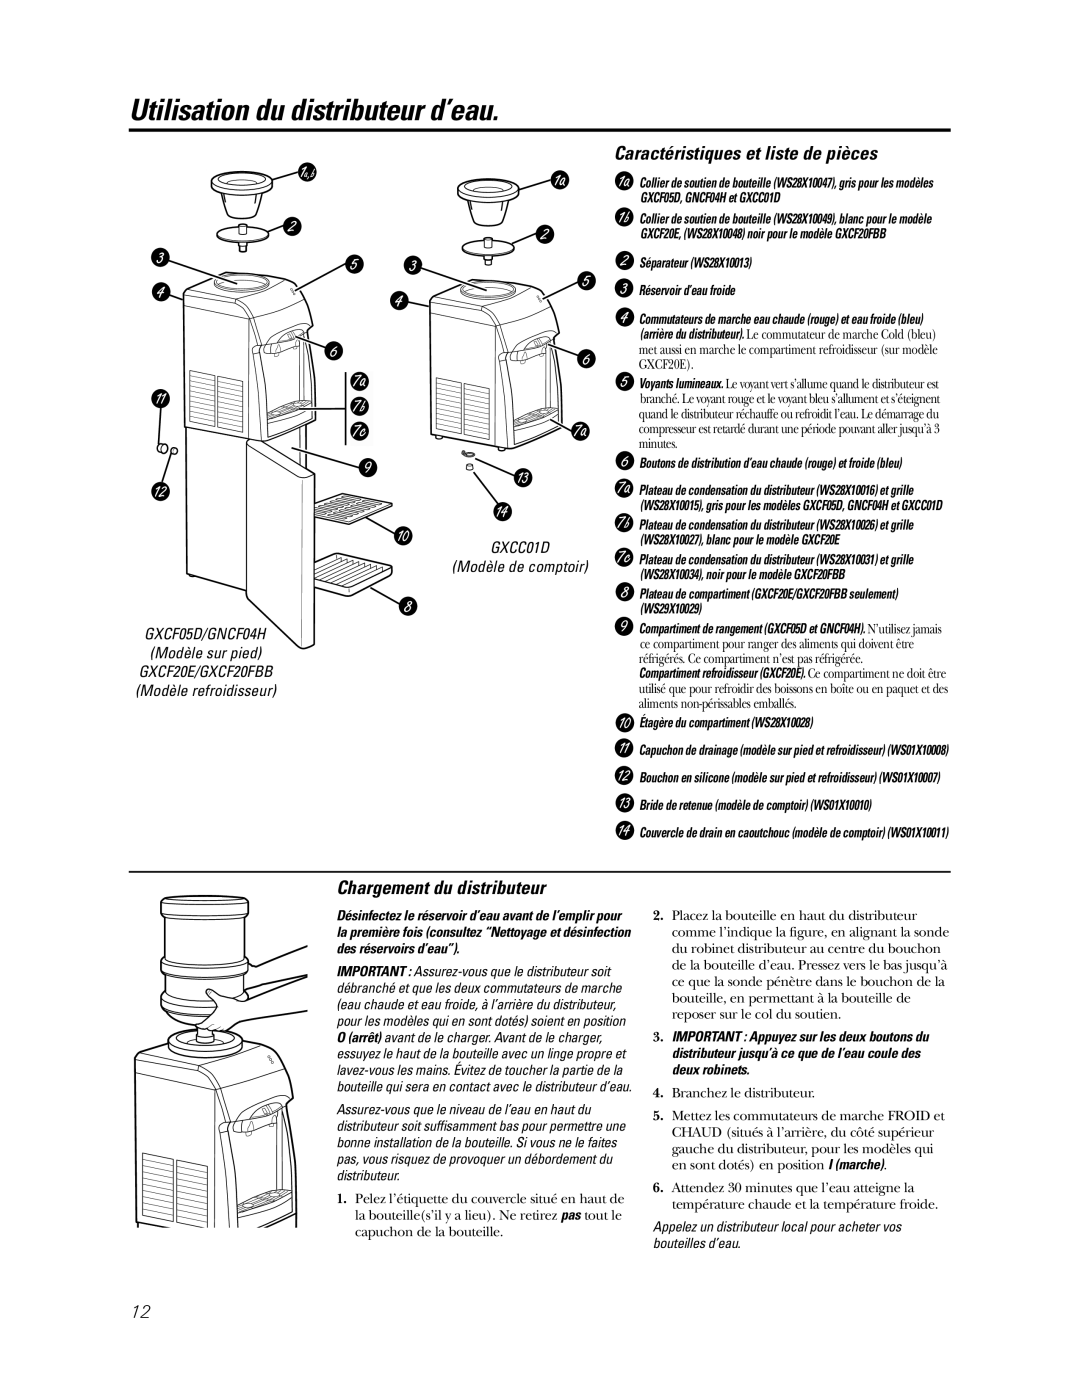 GE GNCF04H/GXCF05D Utilisation du distributeur d’eau, Caractéristiques et liste de pièces, Chargement du distributeur 